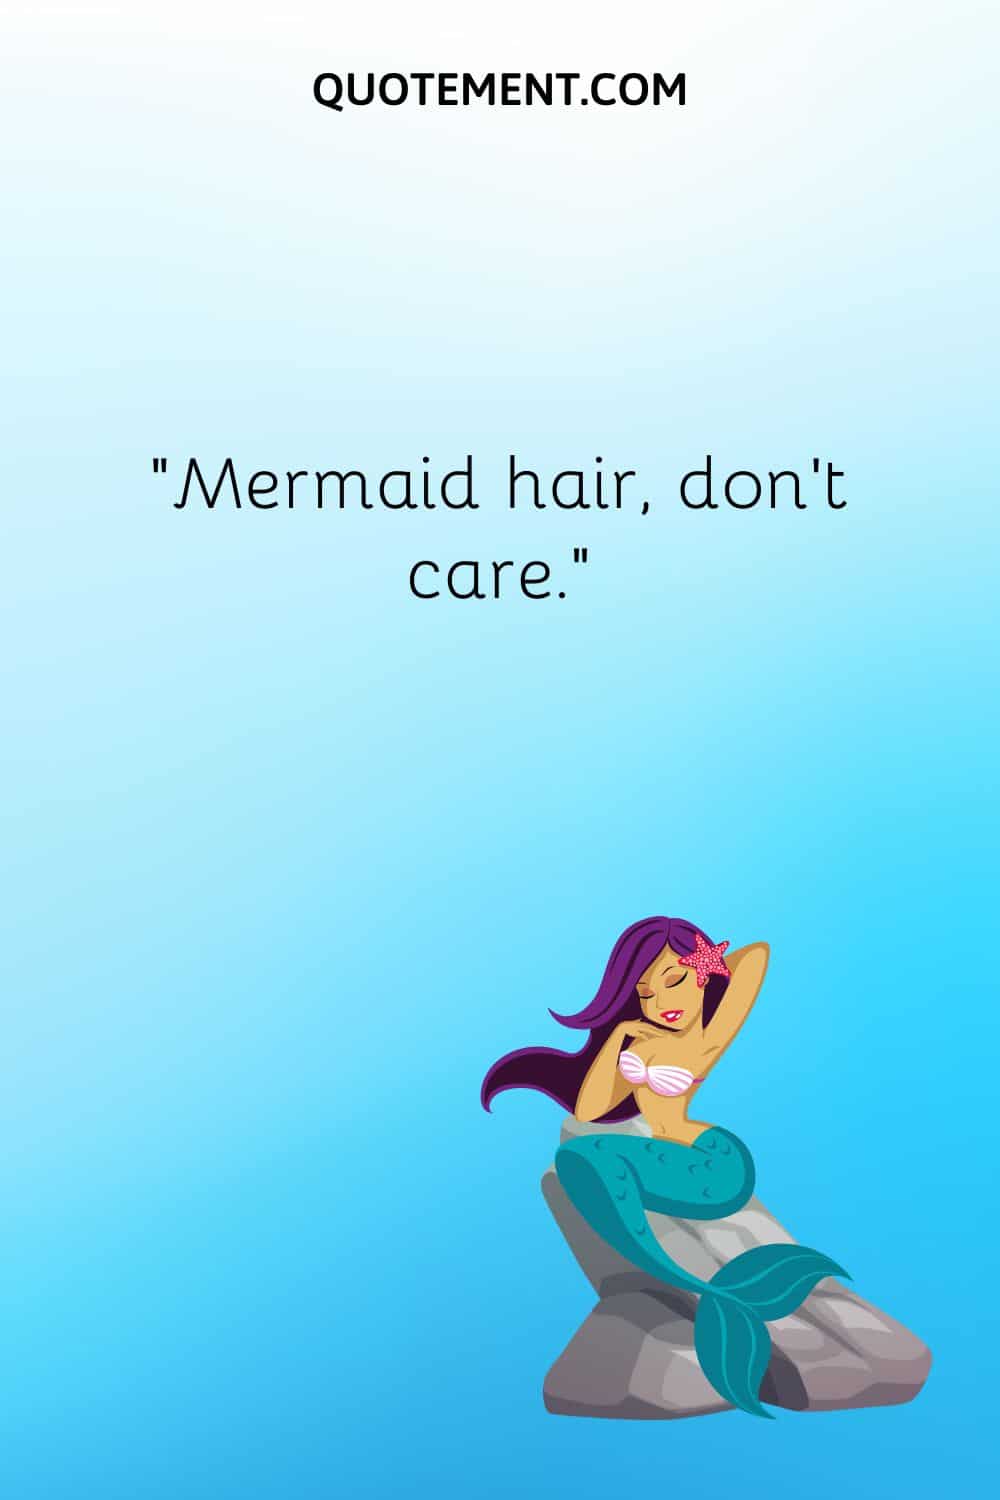 “Mermaid hair, don't care.”